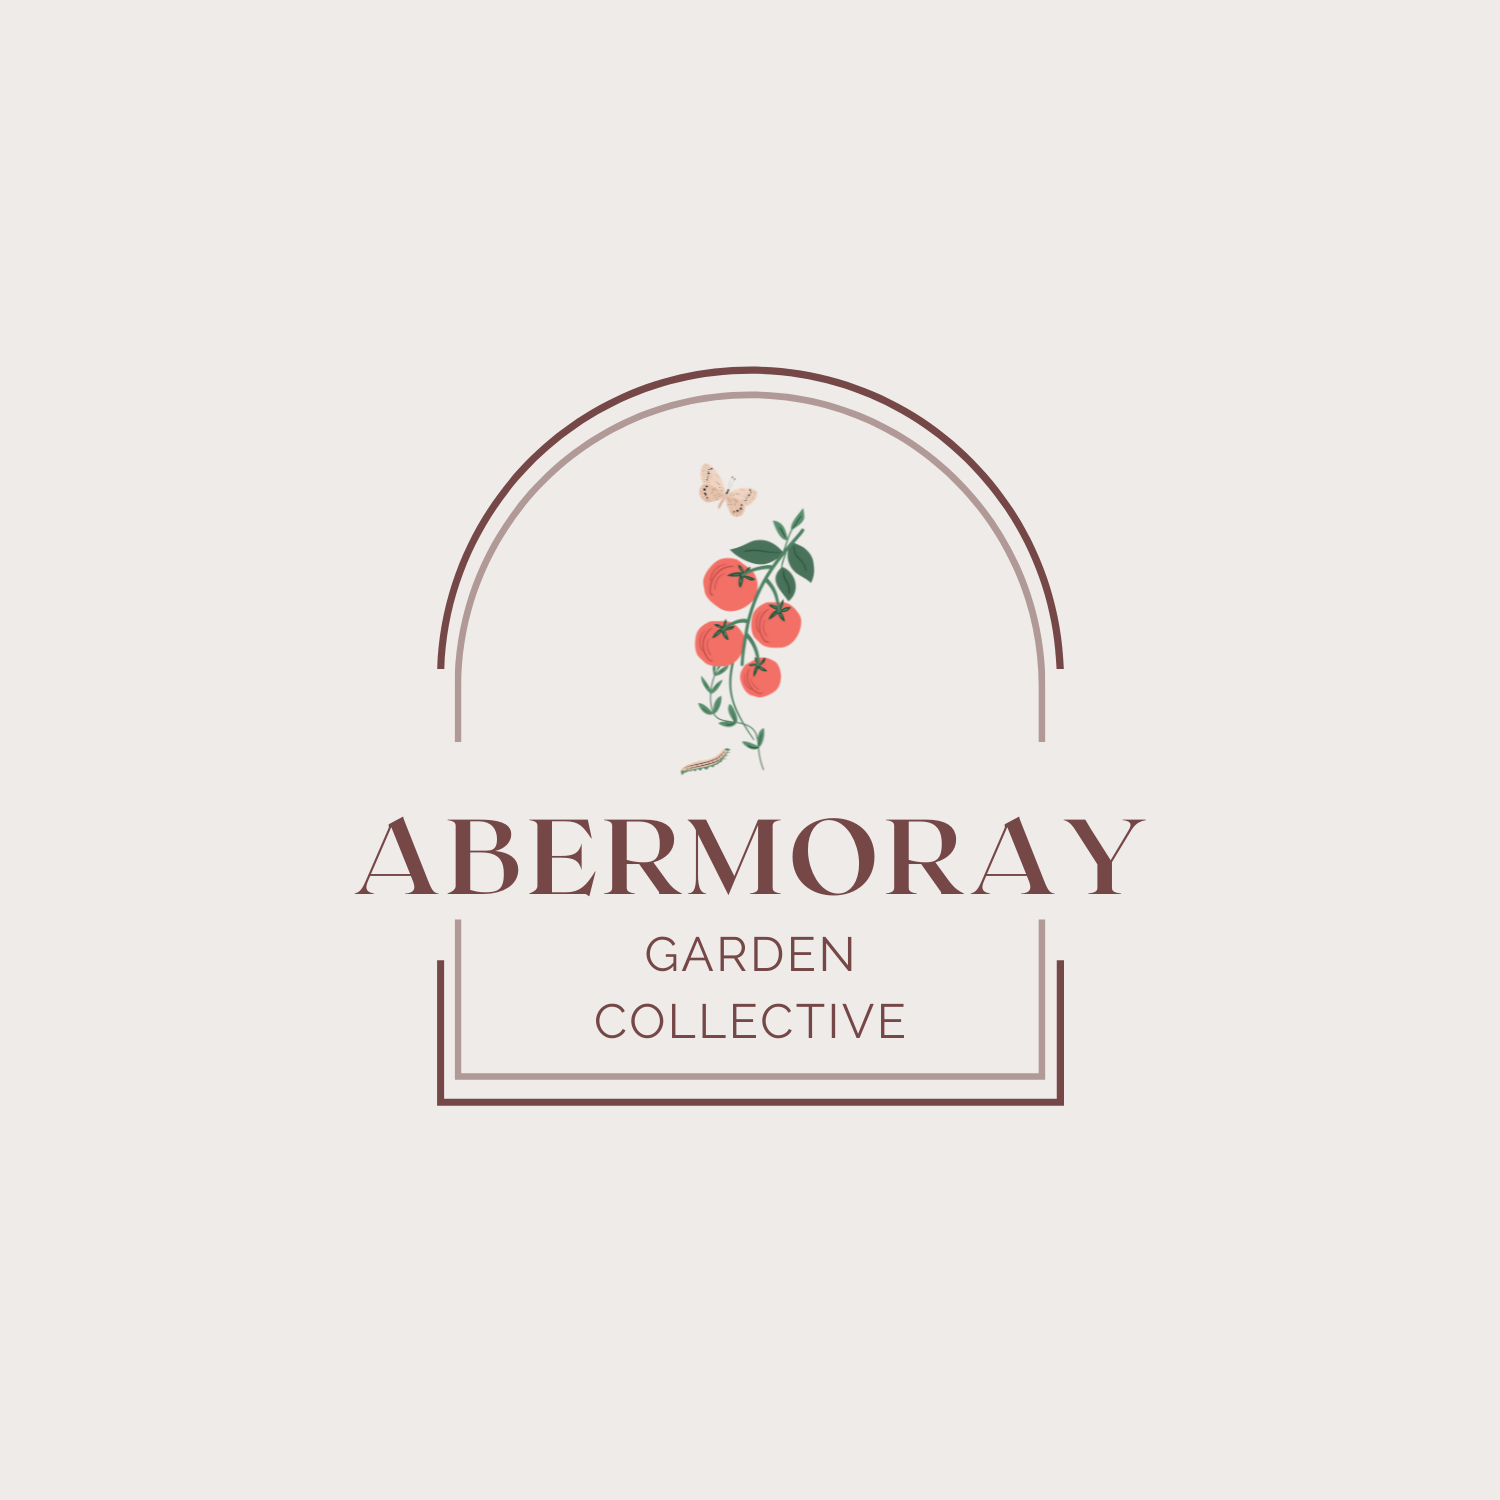 The Abermoray Garden Collective logo